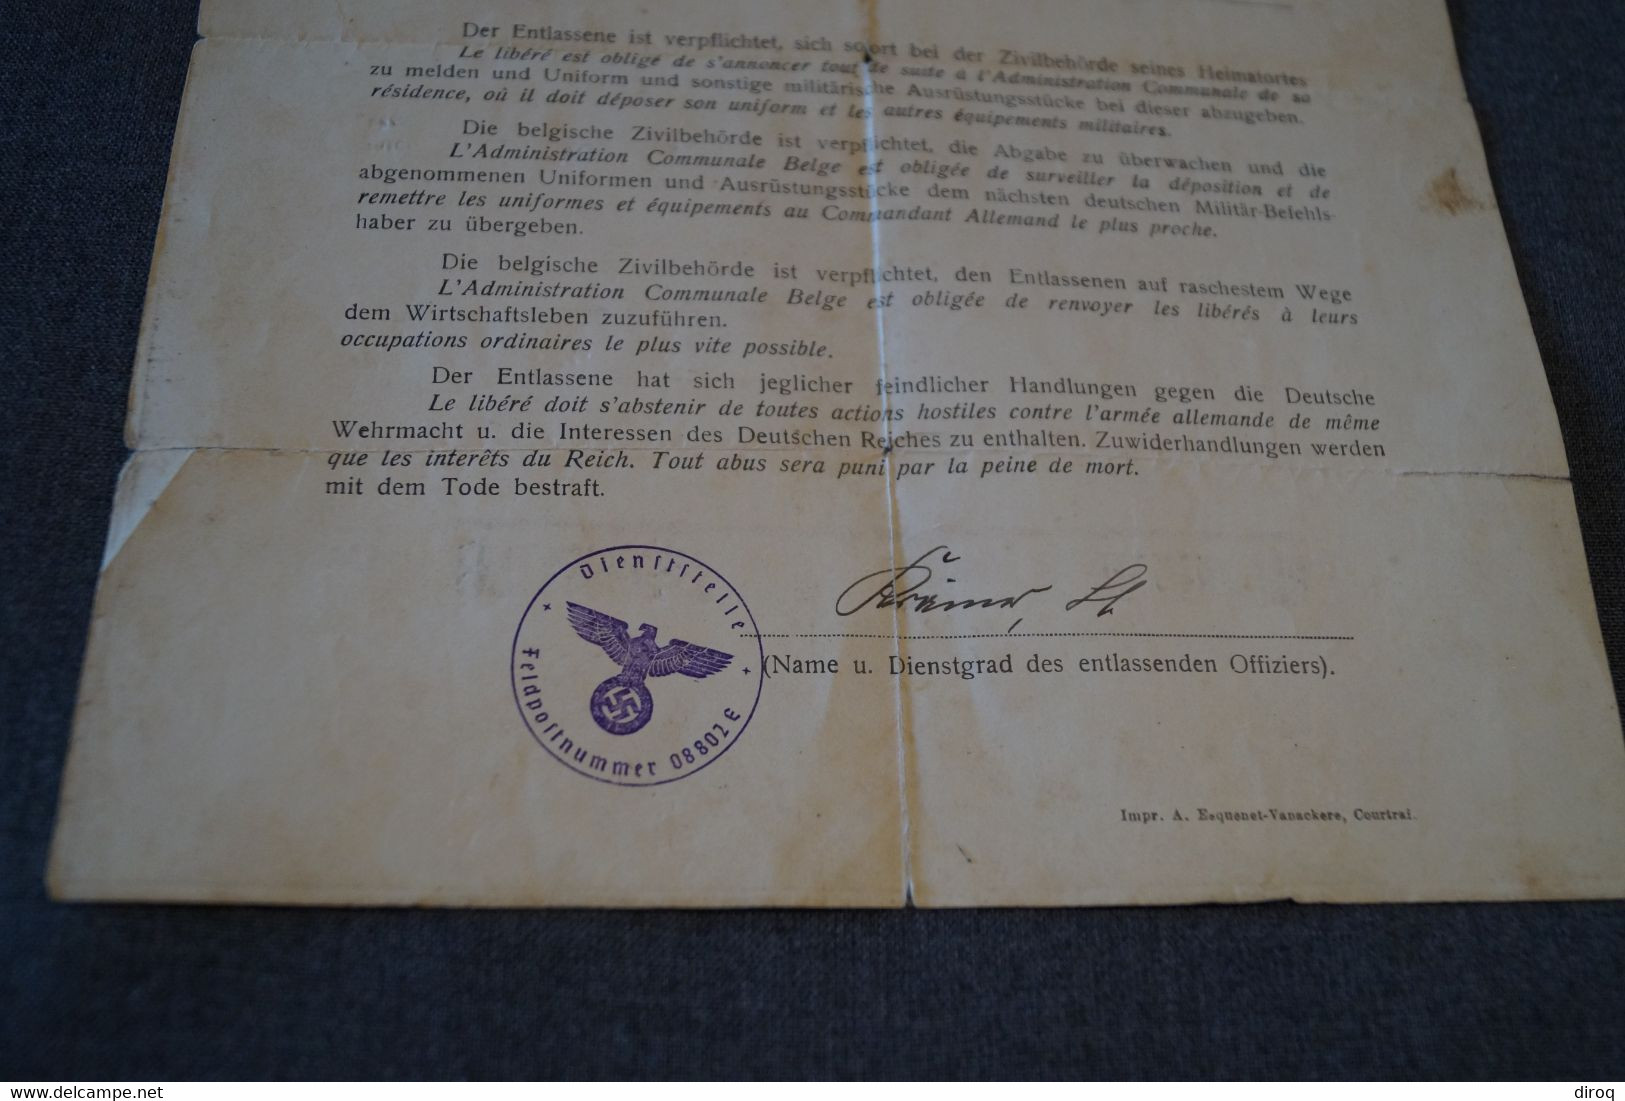 Document Originale,militaria,collection,historique,permis De Délibération,cachet Allemand,Hamois 1940 - Documents